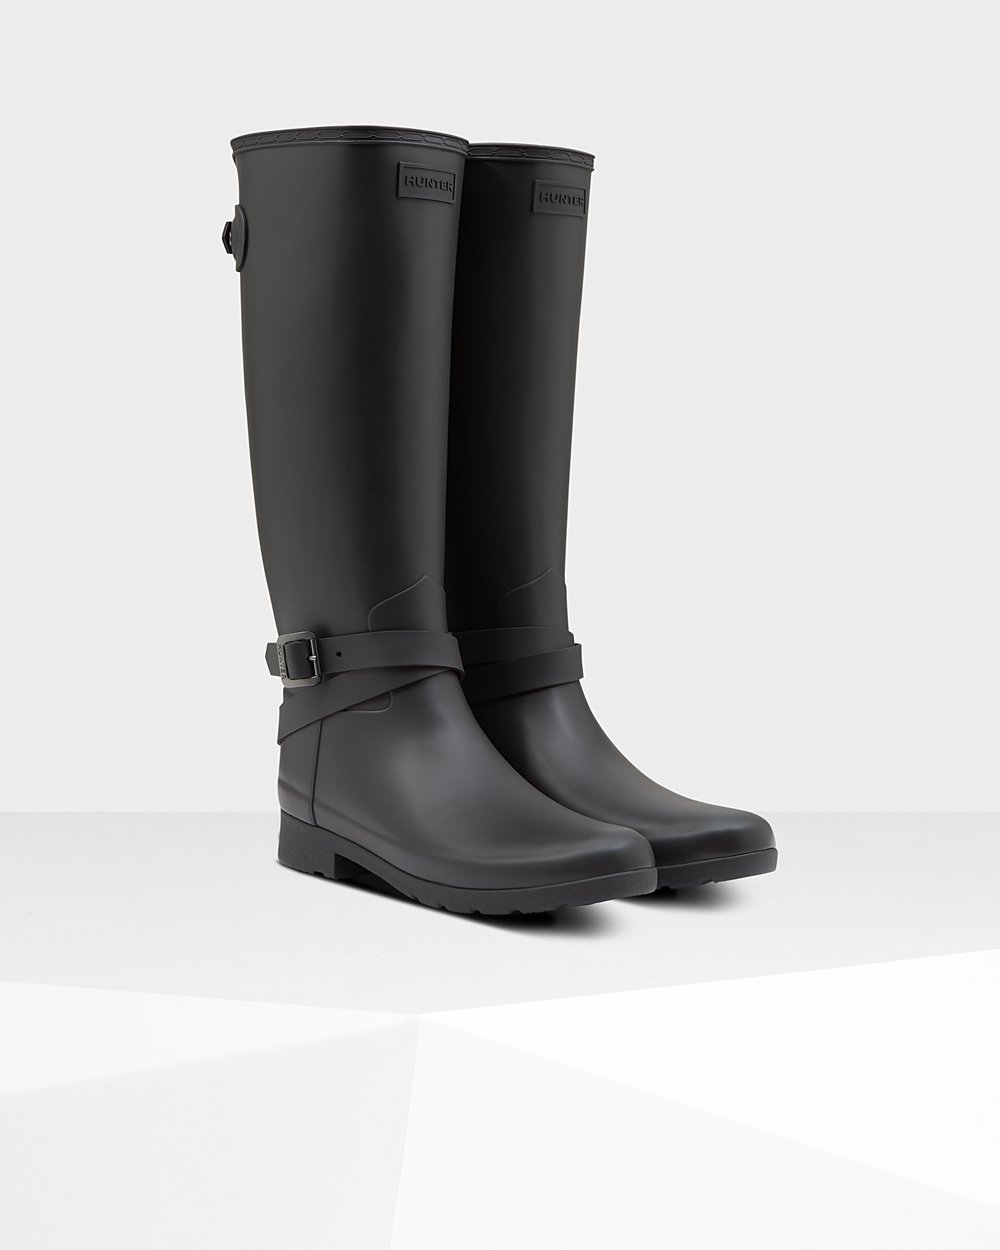 Womens Tall Rain Boots - Hunter Refined Slim Fit Adjustable (23ZPQGMKX) - Black